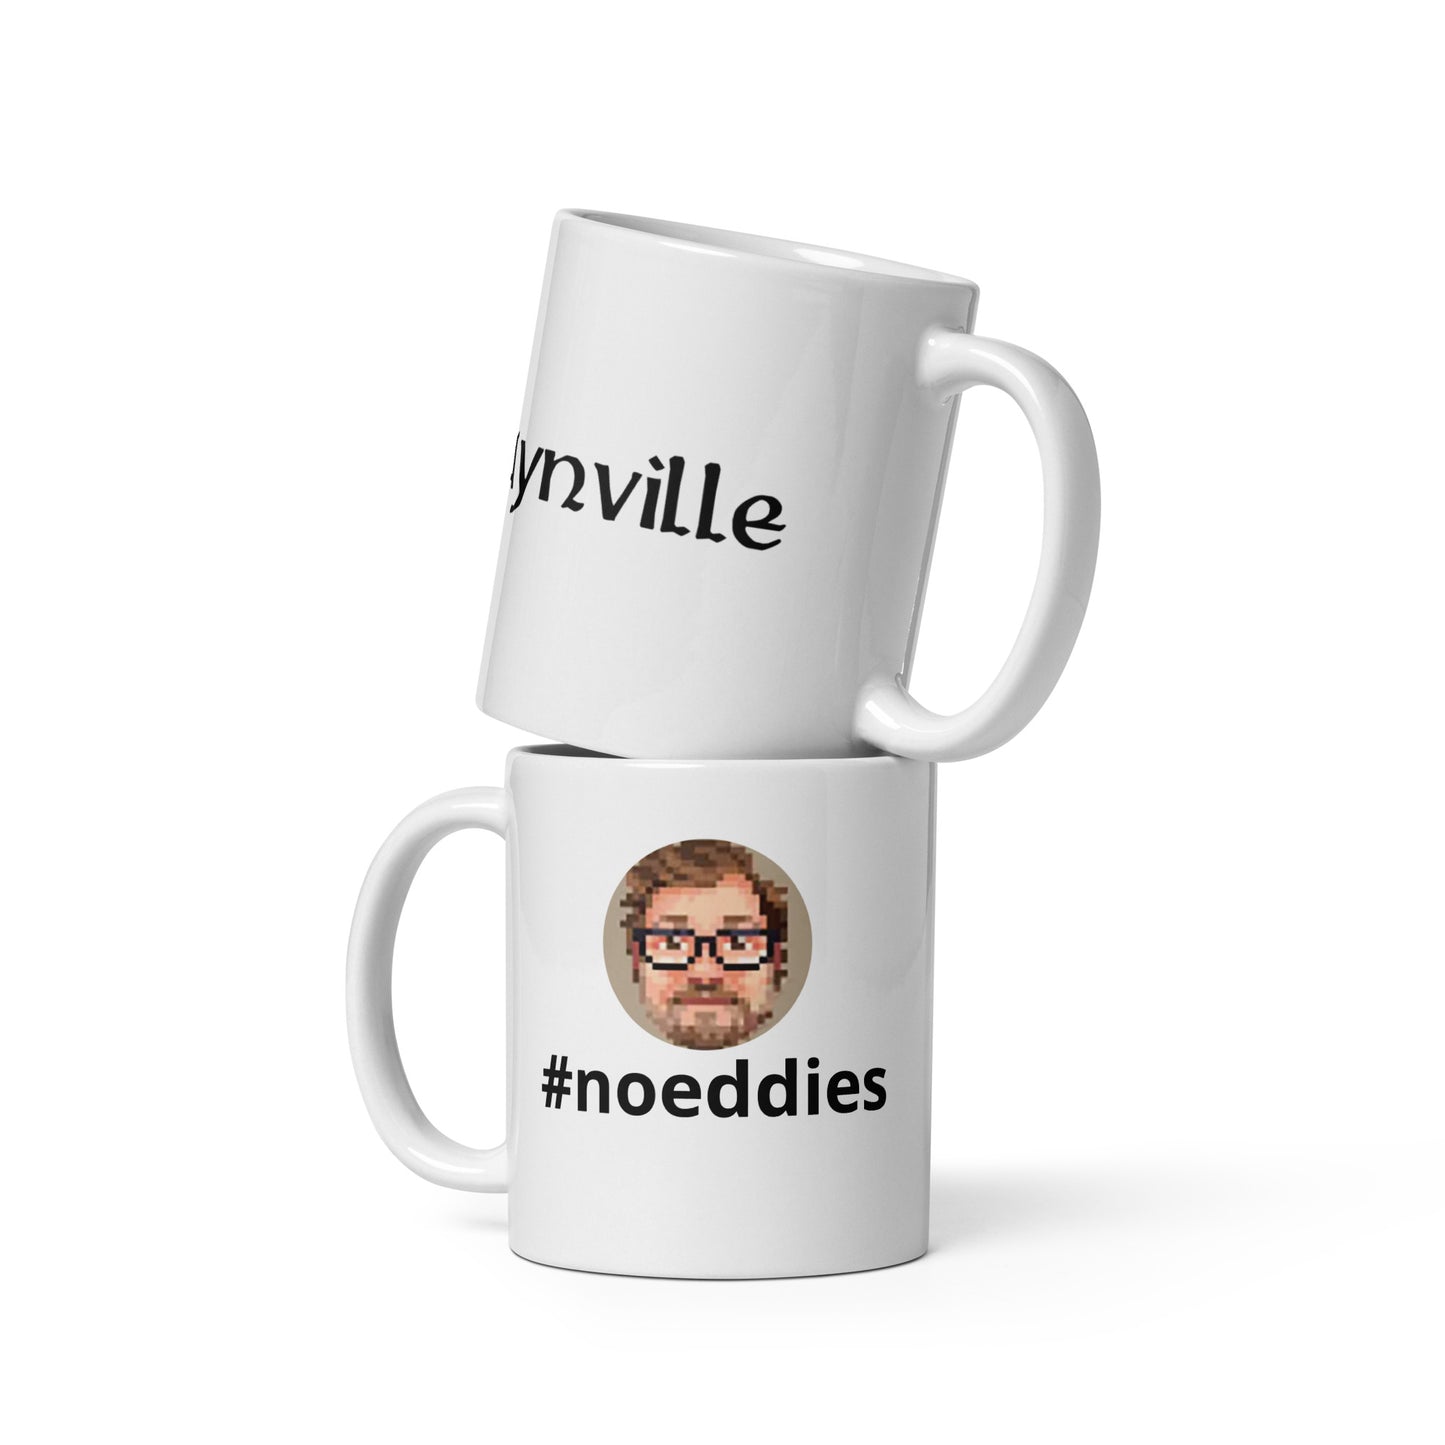 Slaynville #noeddies Mug